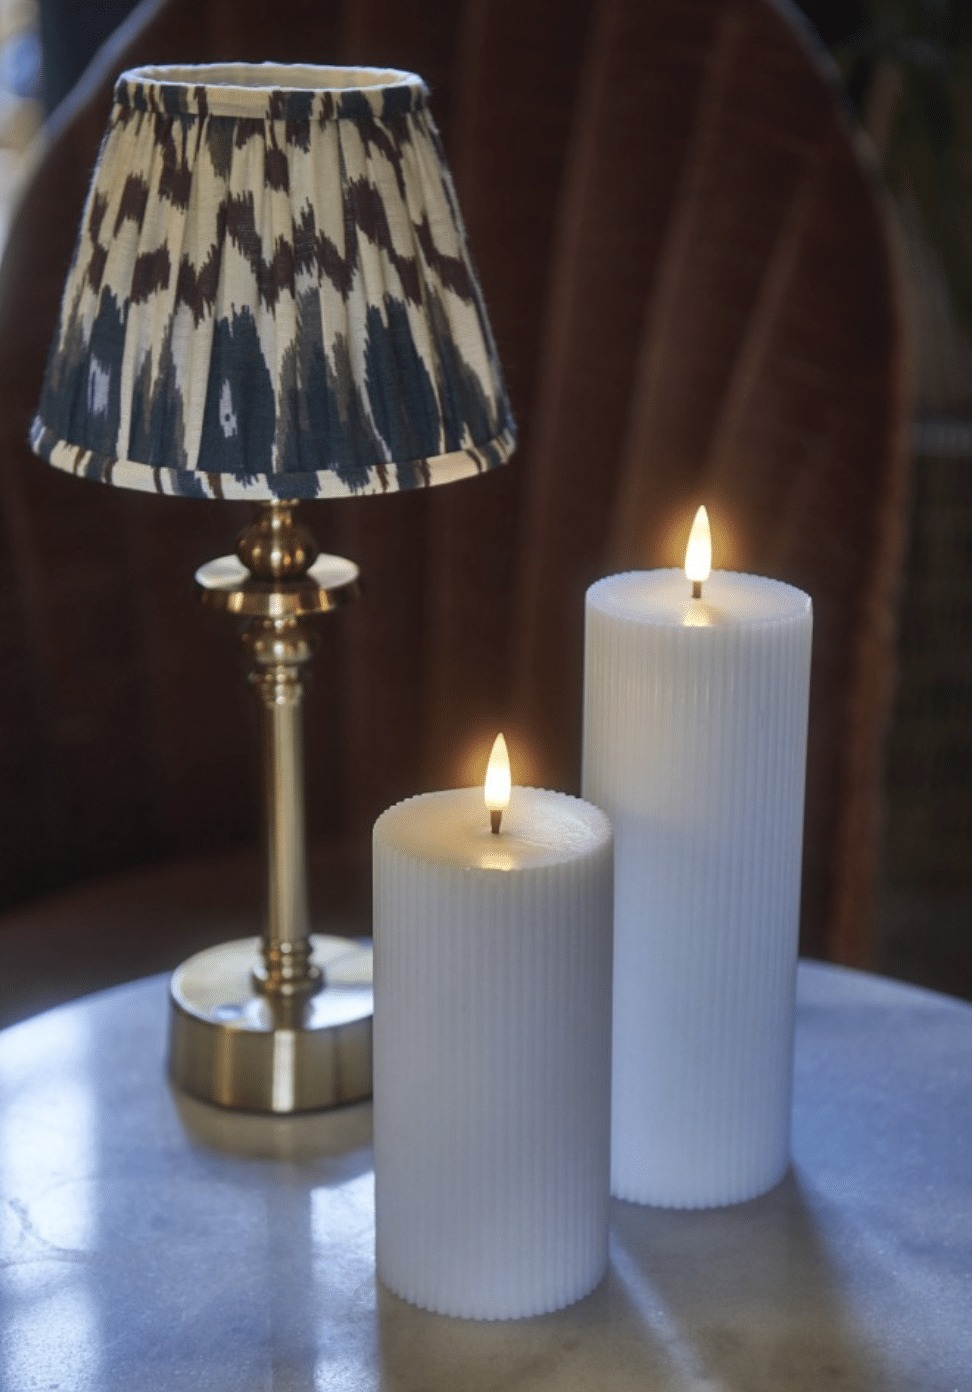 Set de 2 bougies led avec chandeliers-Deco Lumineuse